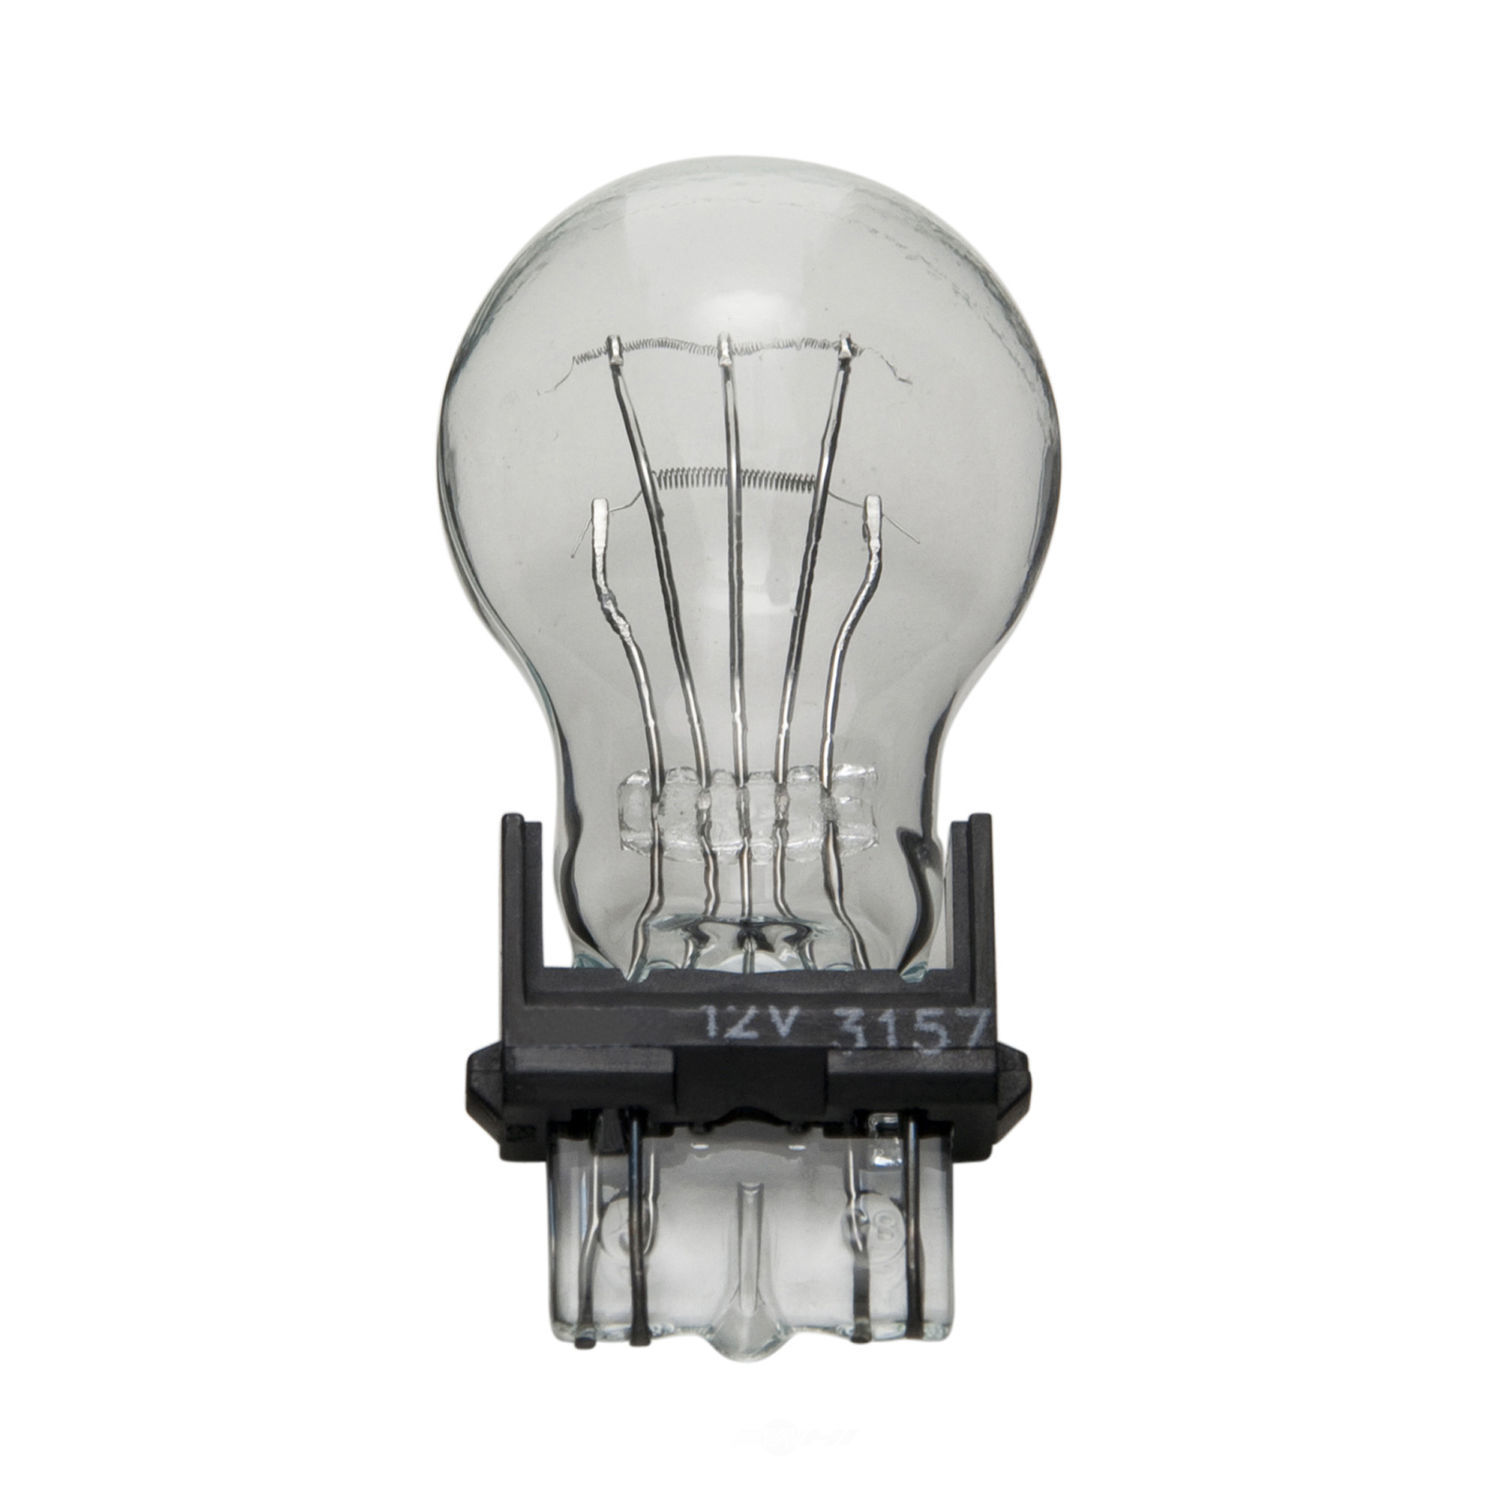 WAGNER LIGHTING - Miniature Lamp Boxed Running Light Bulb - WLP 3157